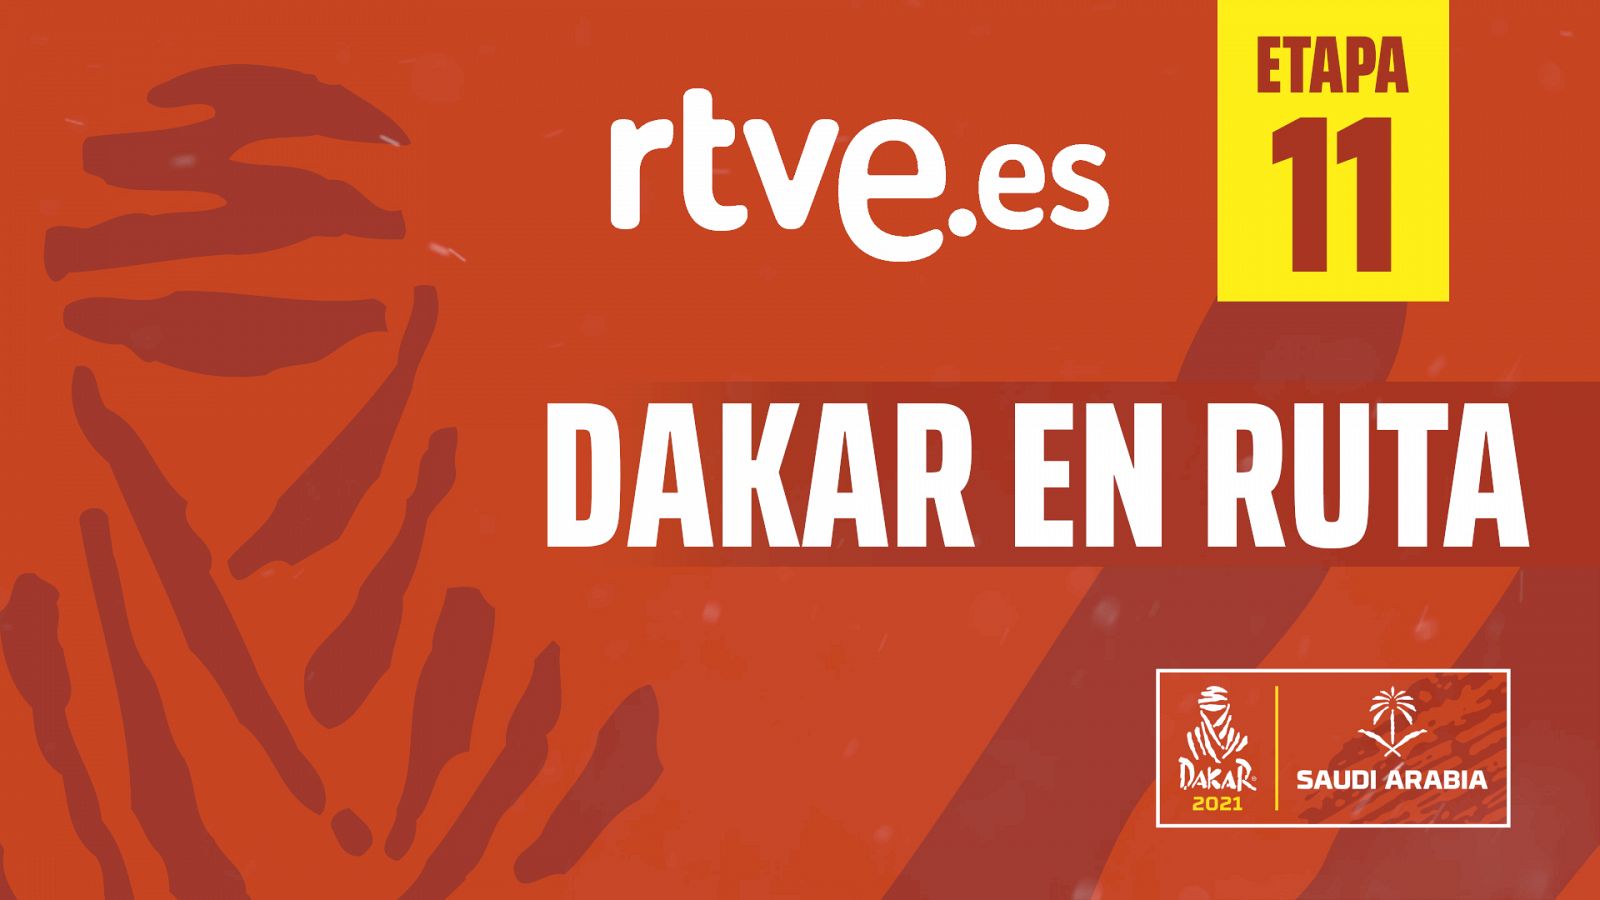 Dakar 2021 Etapa 11 | Dakar en r